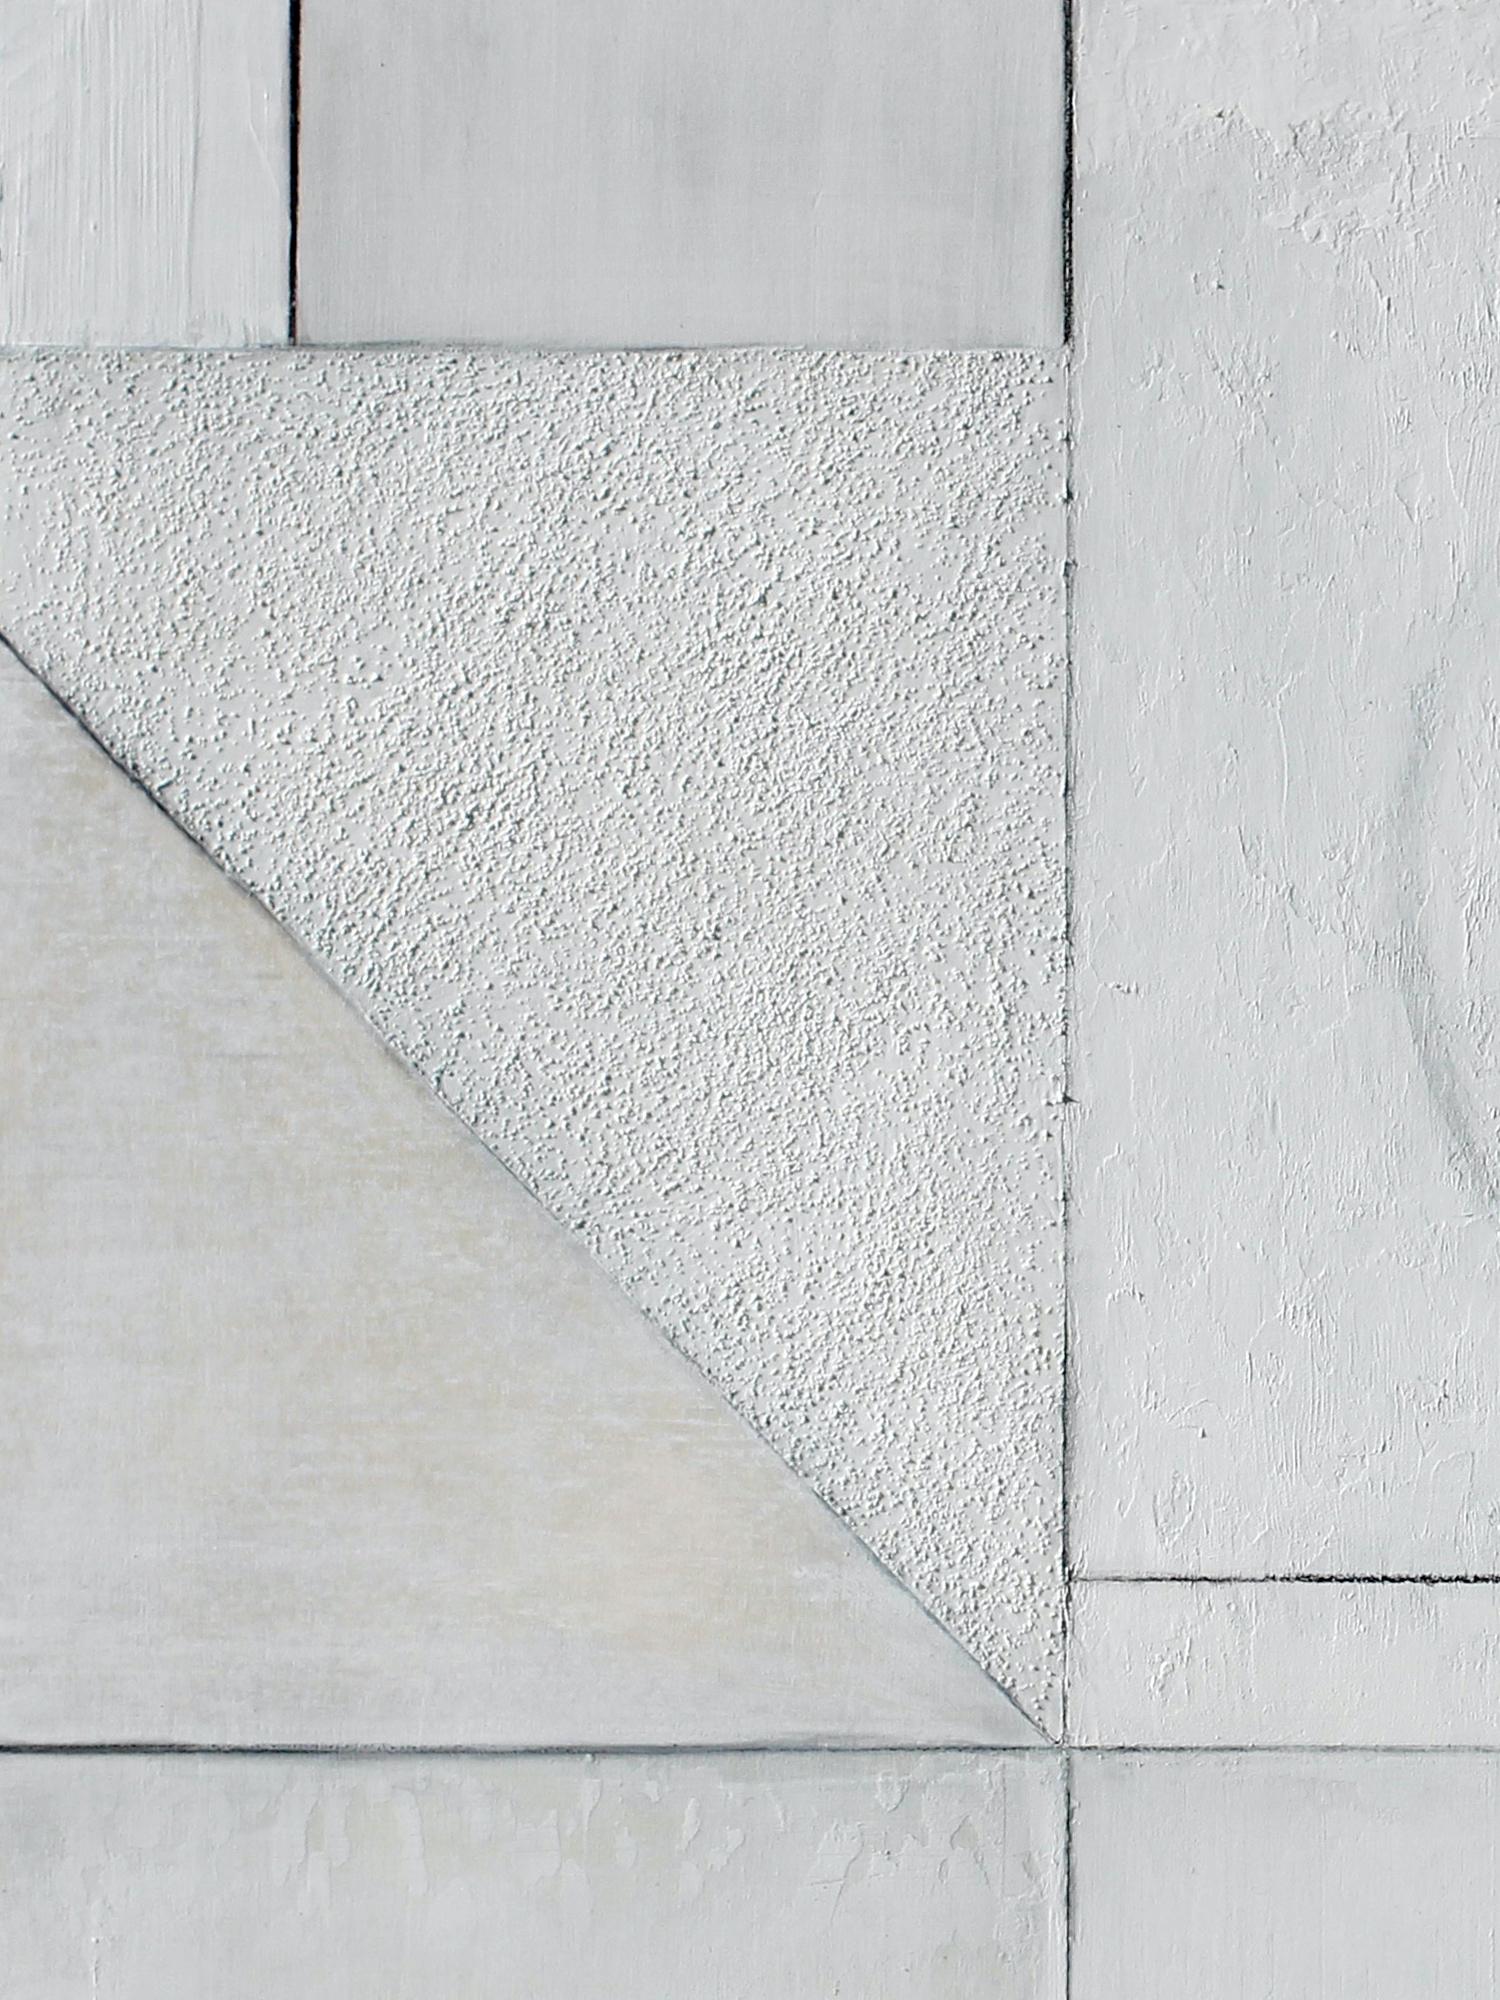 Dieses Werk zeigt eine abstrakte Komposition mit gemischten Medien und kühnen Mustern, die eine visuell strukturierte und vielschichtige Arbeit ergeben, während Owen eine komplizierte geometrische, minimalistische Komposition schafft. Obwohl dieses